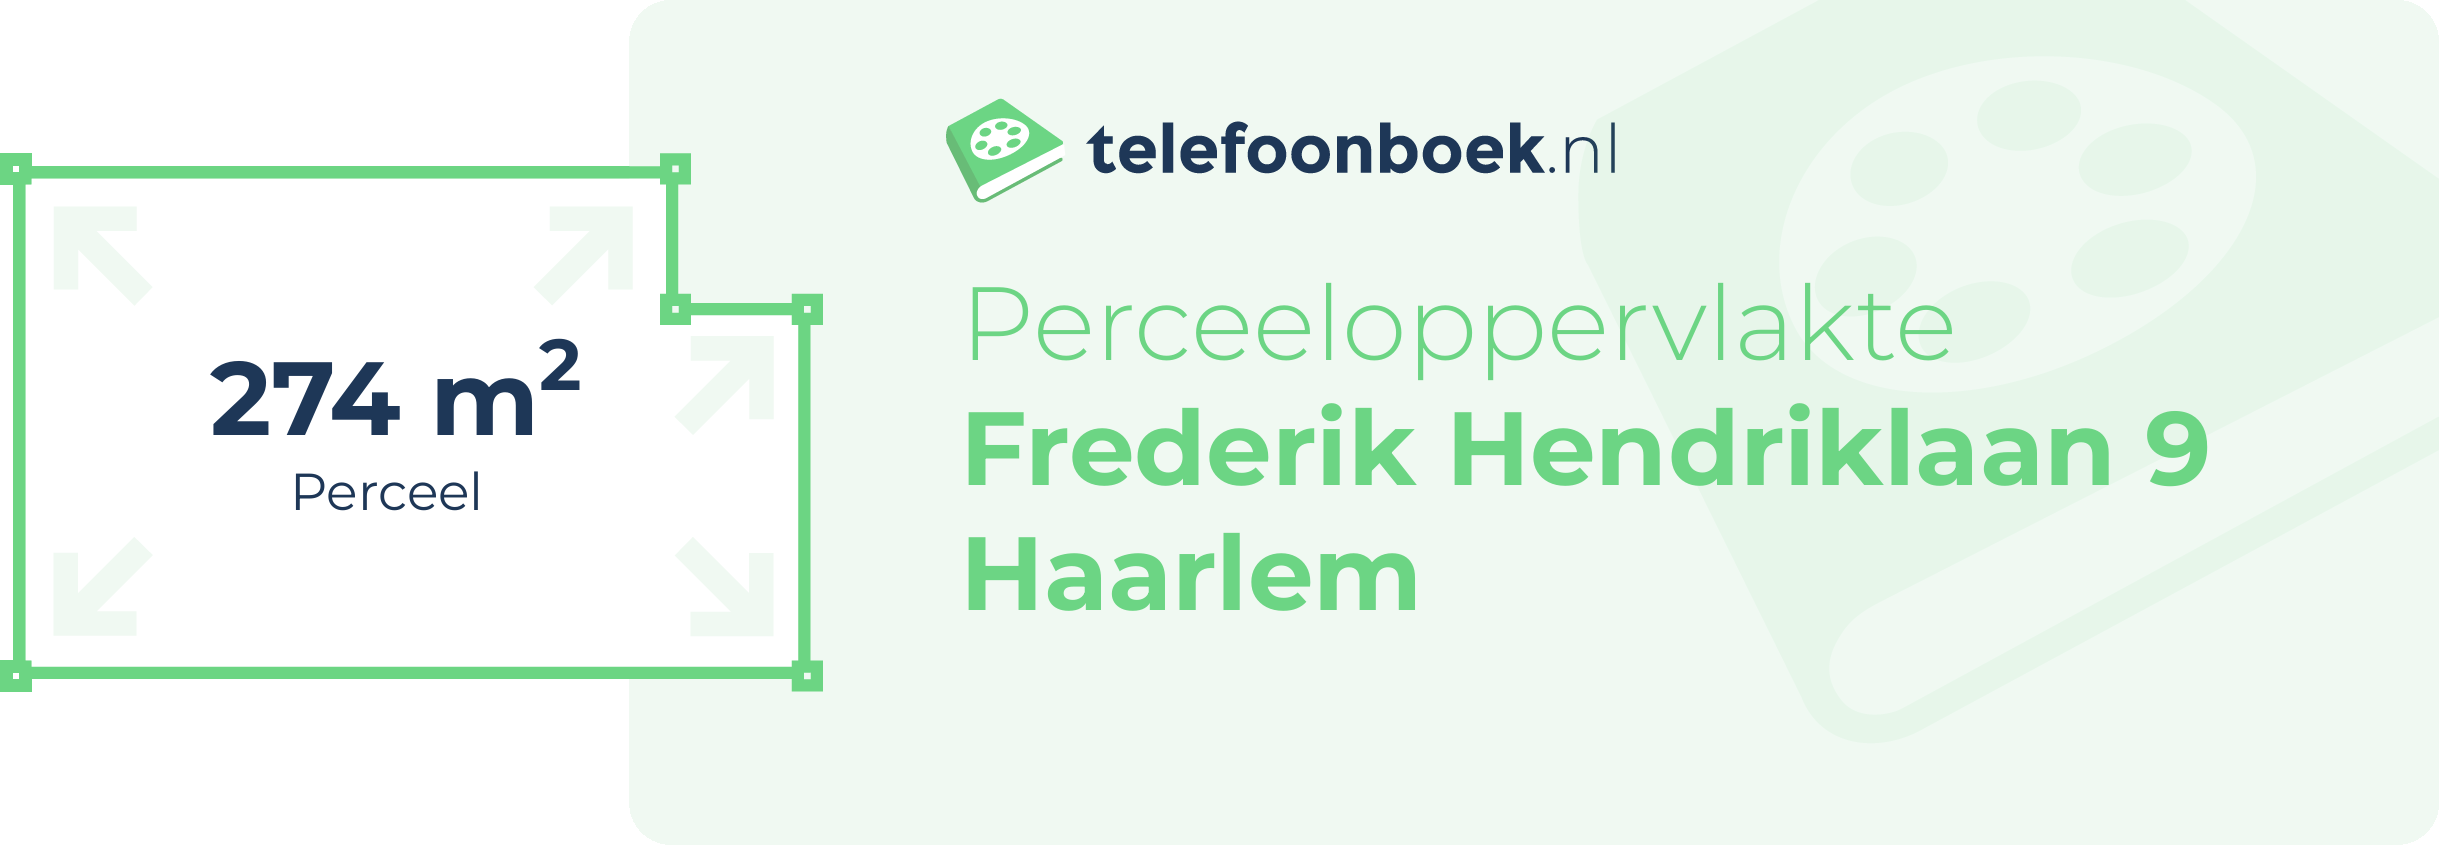 Perceeloppervlakte Frederik Hendriklaan 9 Haarlem